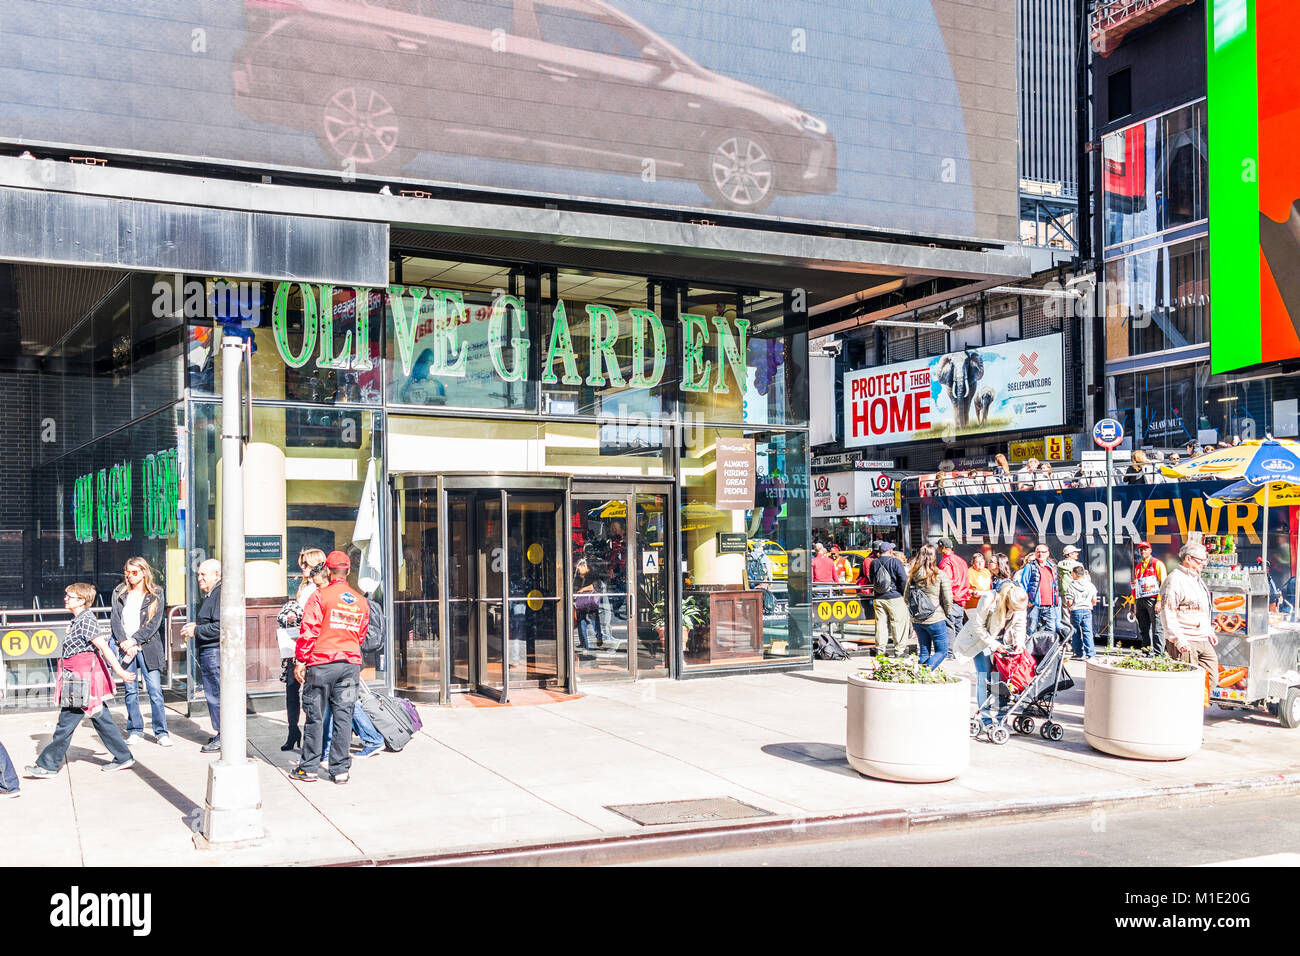 La città di New York, Stati Uniti d'America - 28 Ottobre 2017: Manhattan NYC edifici di midtown Times Square, Broadway Avenue road, segni di annunci per Olive Garden, persone walki Foto Stock